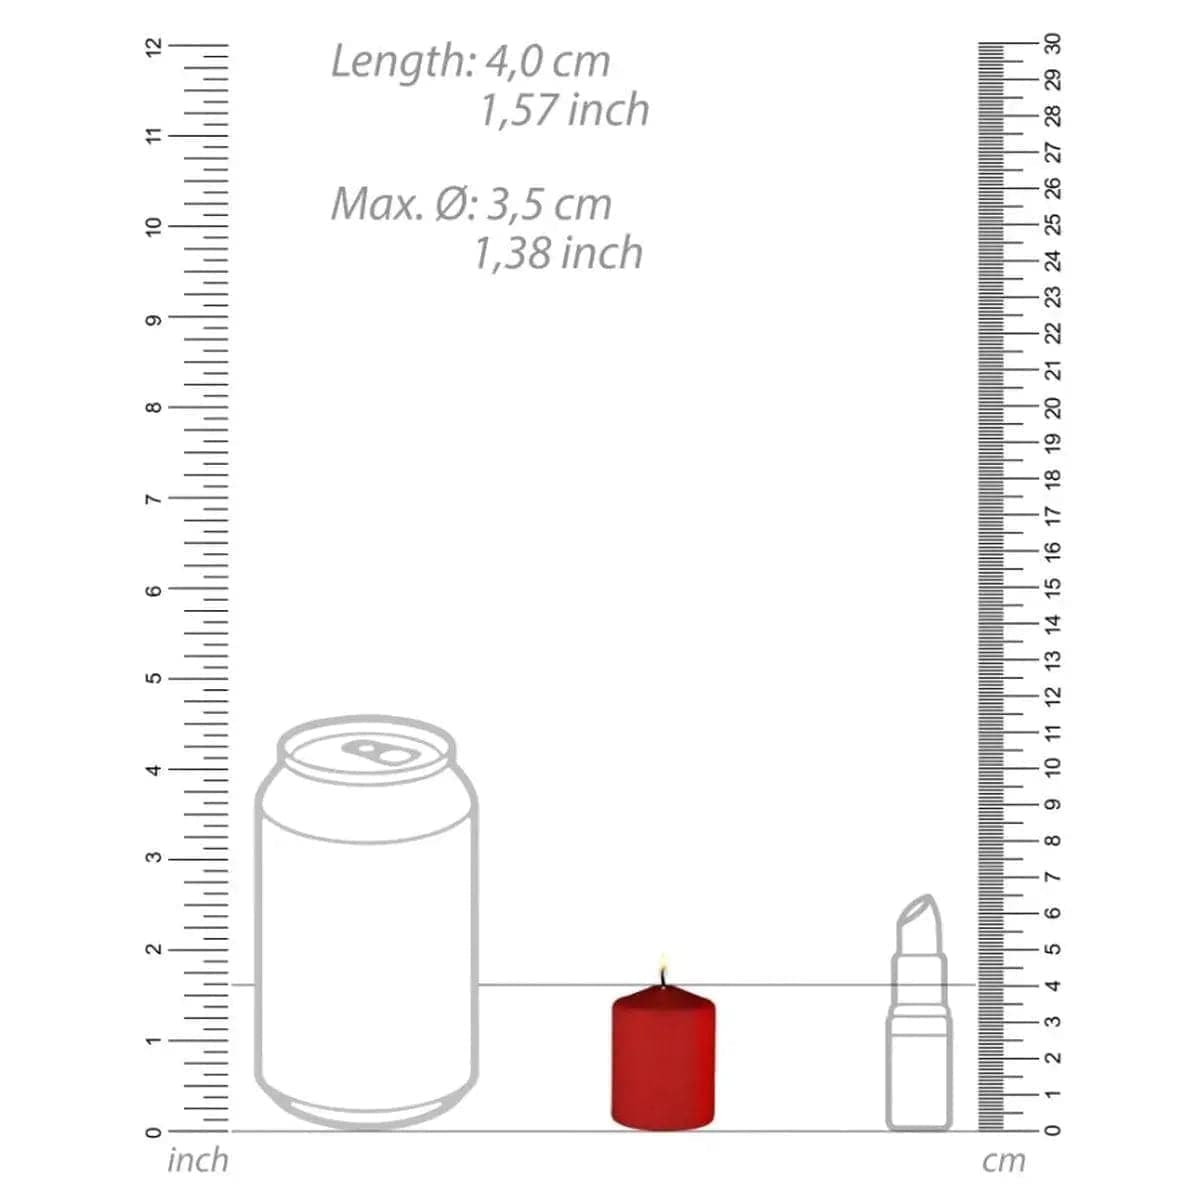 Vela de Sadomaso de Baixa Temperatura, 4 mini-velas Vermelho, 4cm Ø3.5cm  Ouch!   